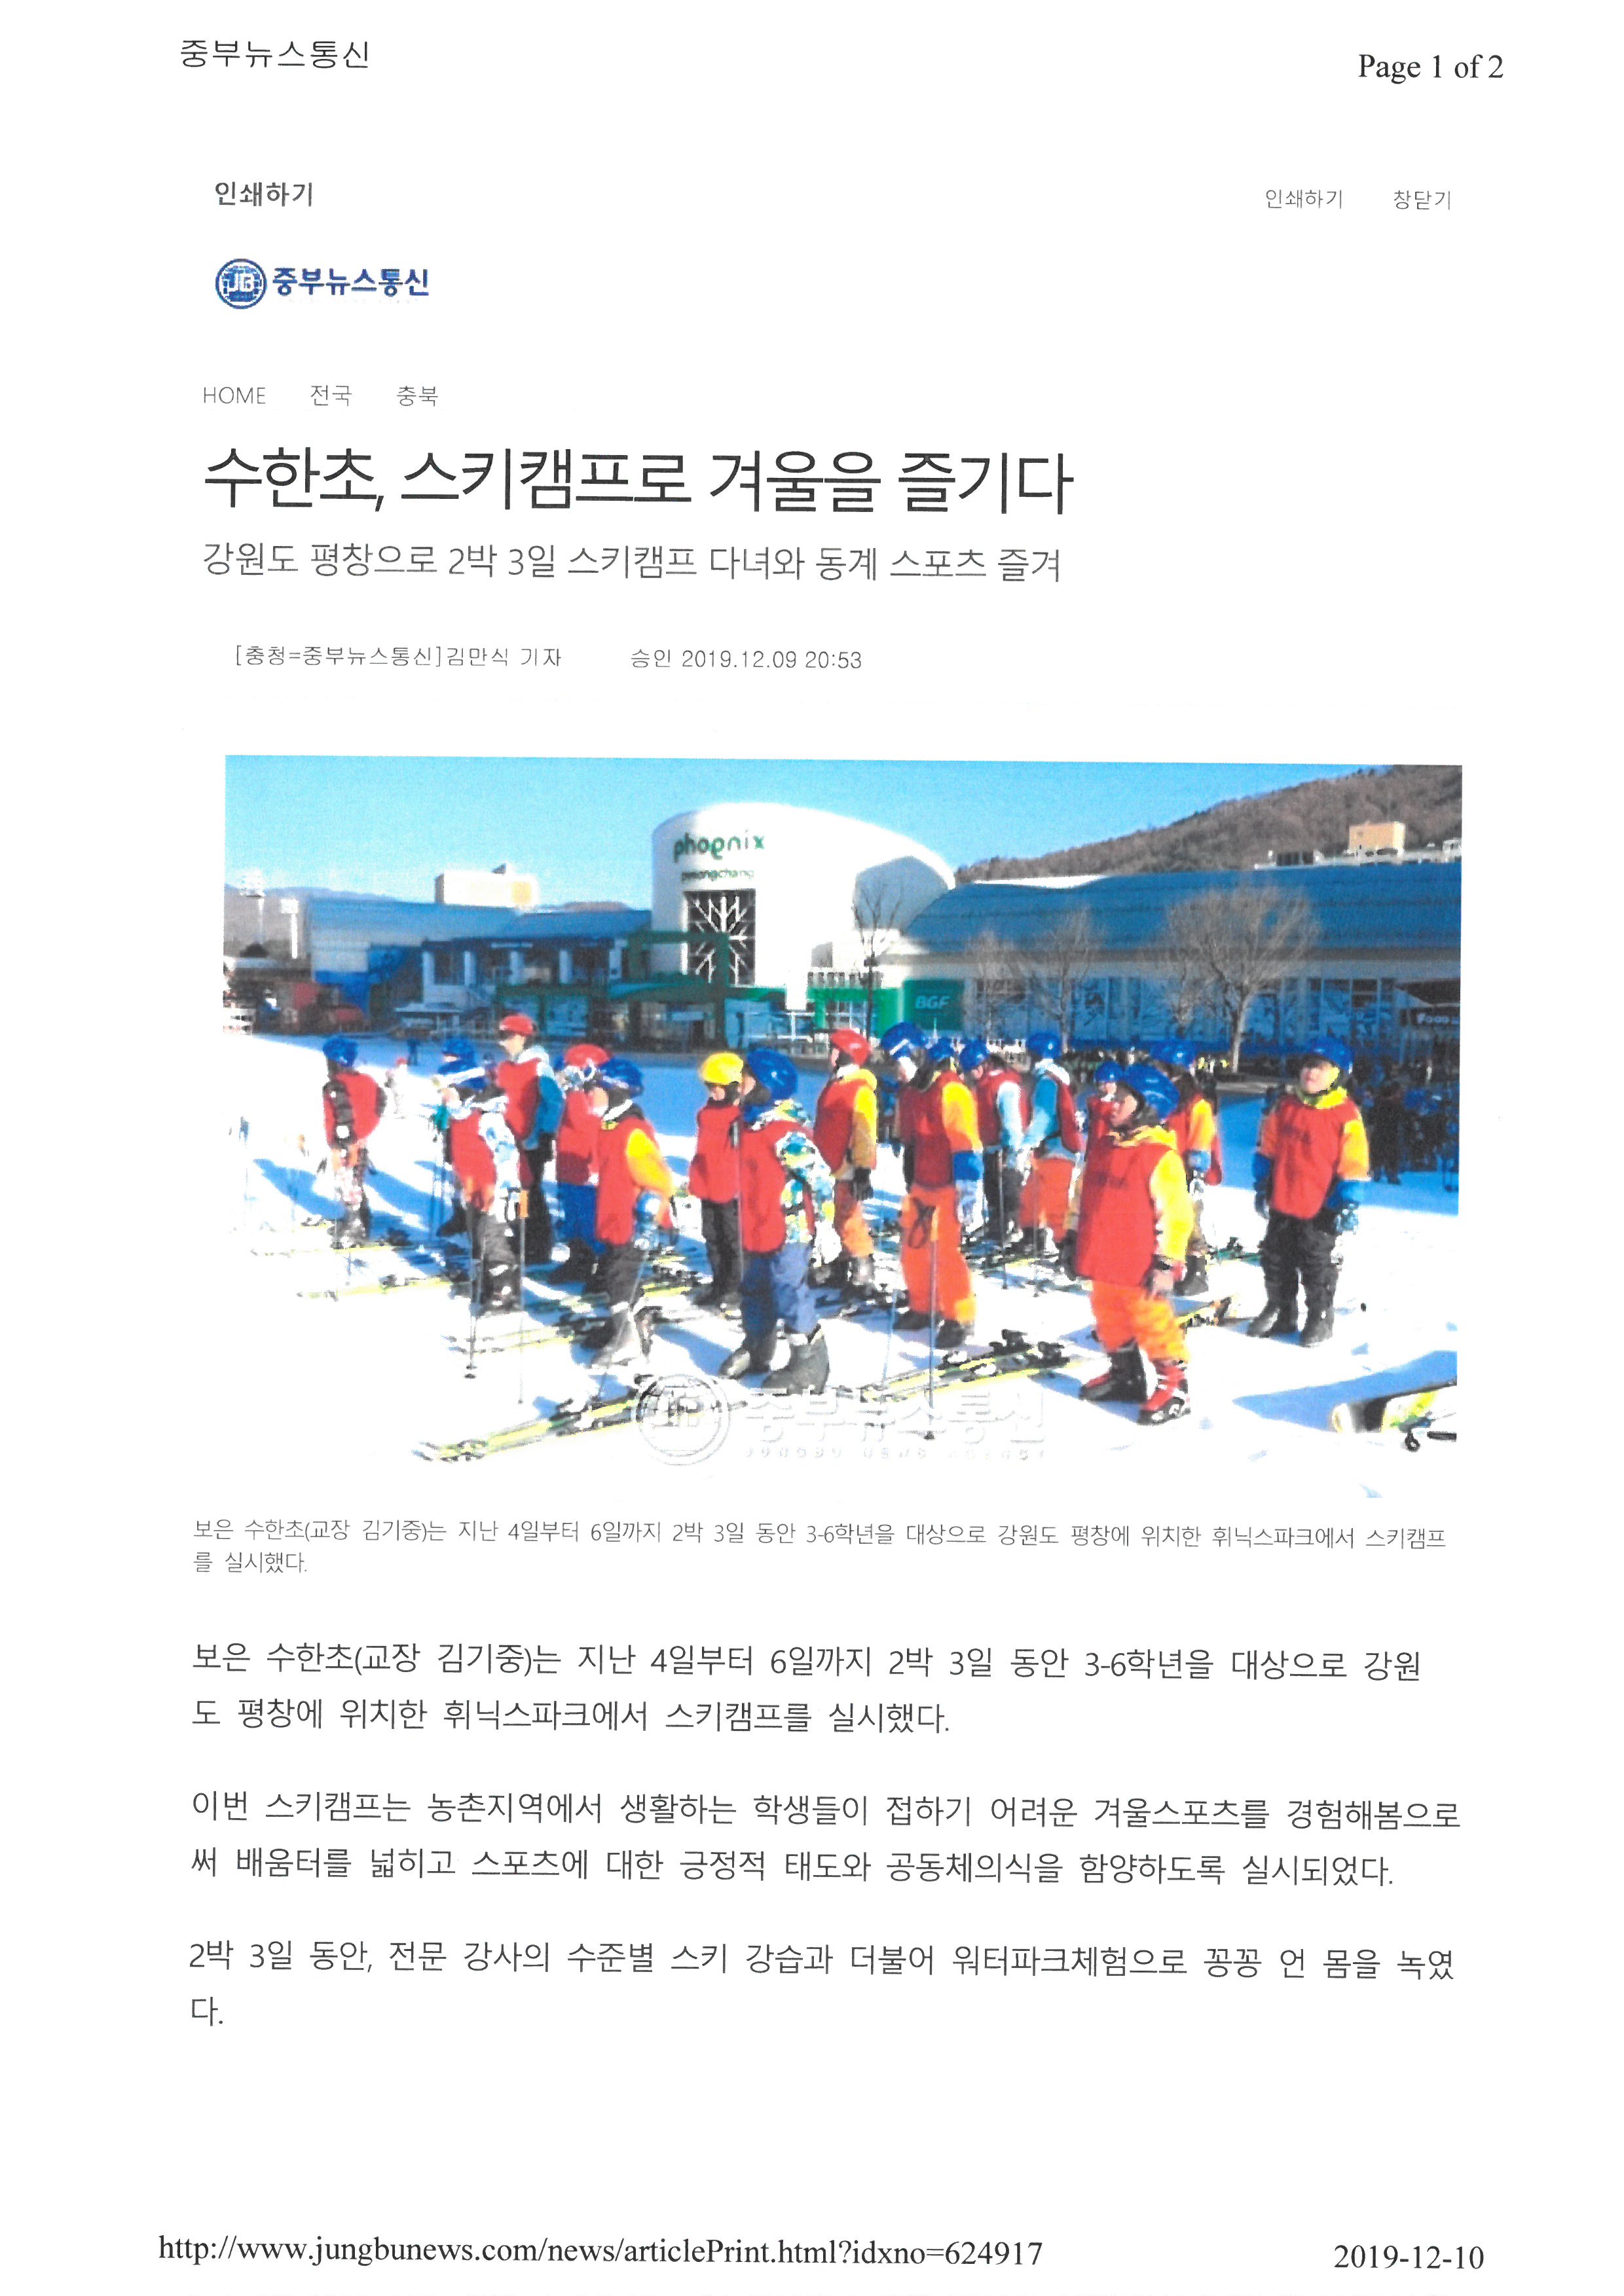 중부뉴스통신-스키캠프 (1)